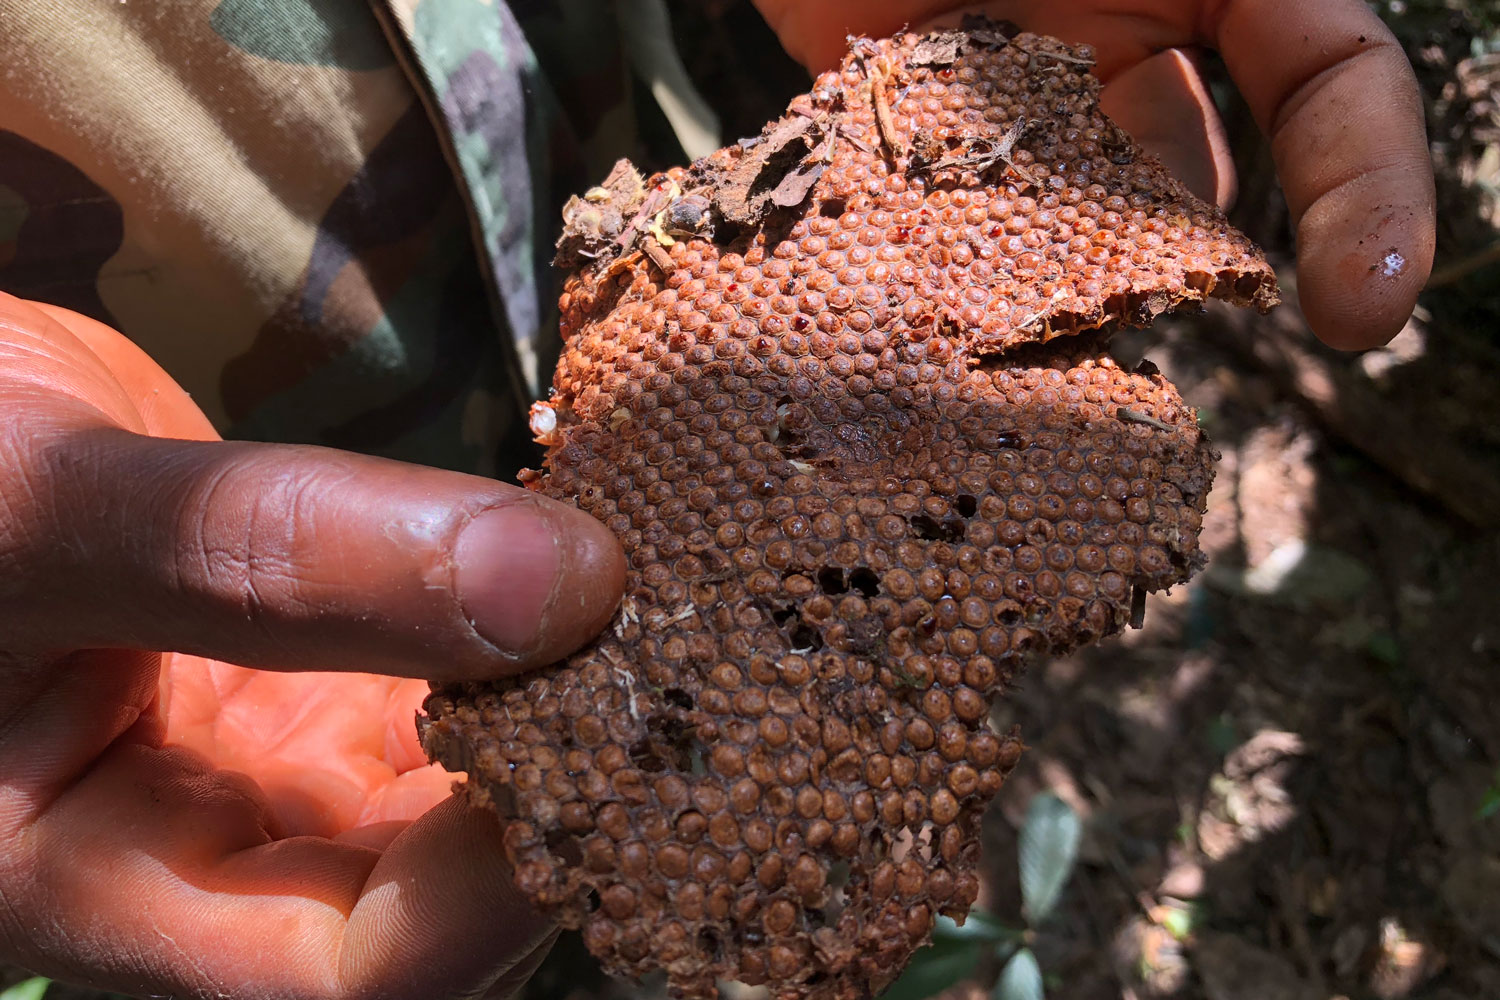 Un morceau de ruche d’abeilles sauvages récemment visitée par les éléphants.